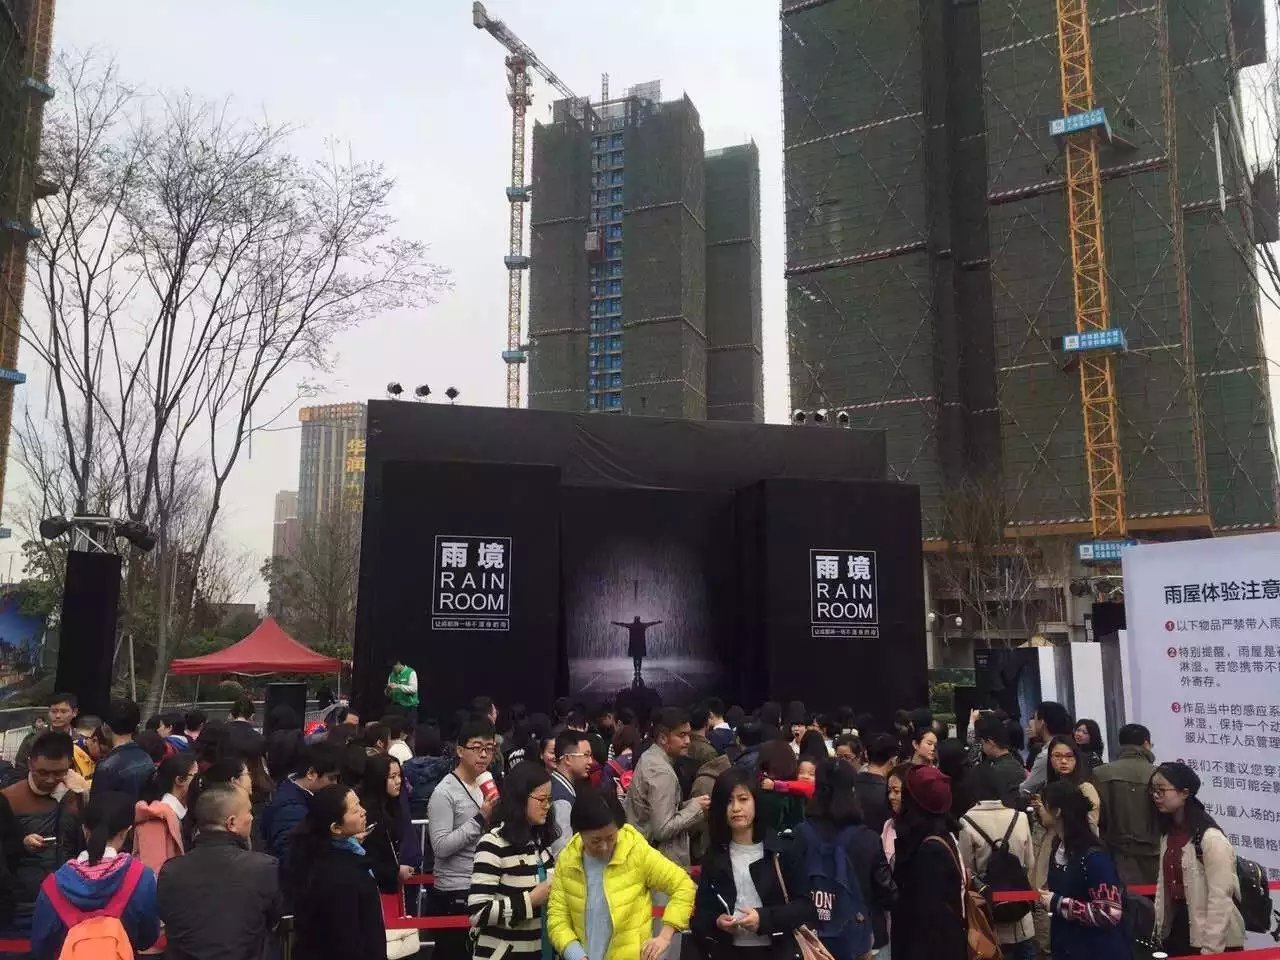 上海彤馨供应表情包 雨屋等展览互动体验设备出租出售图片